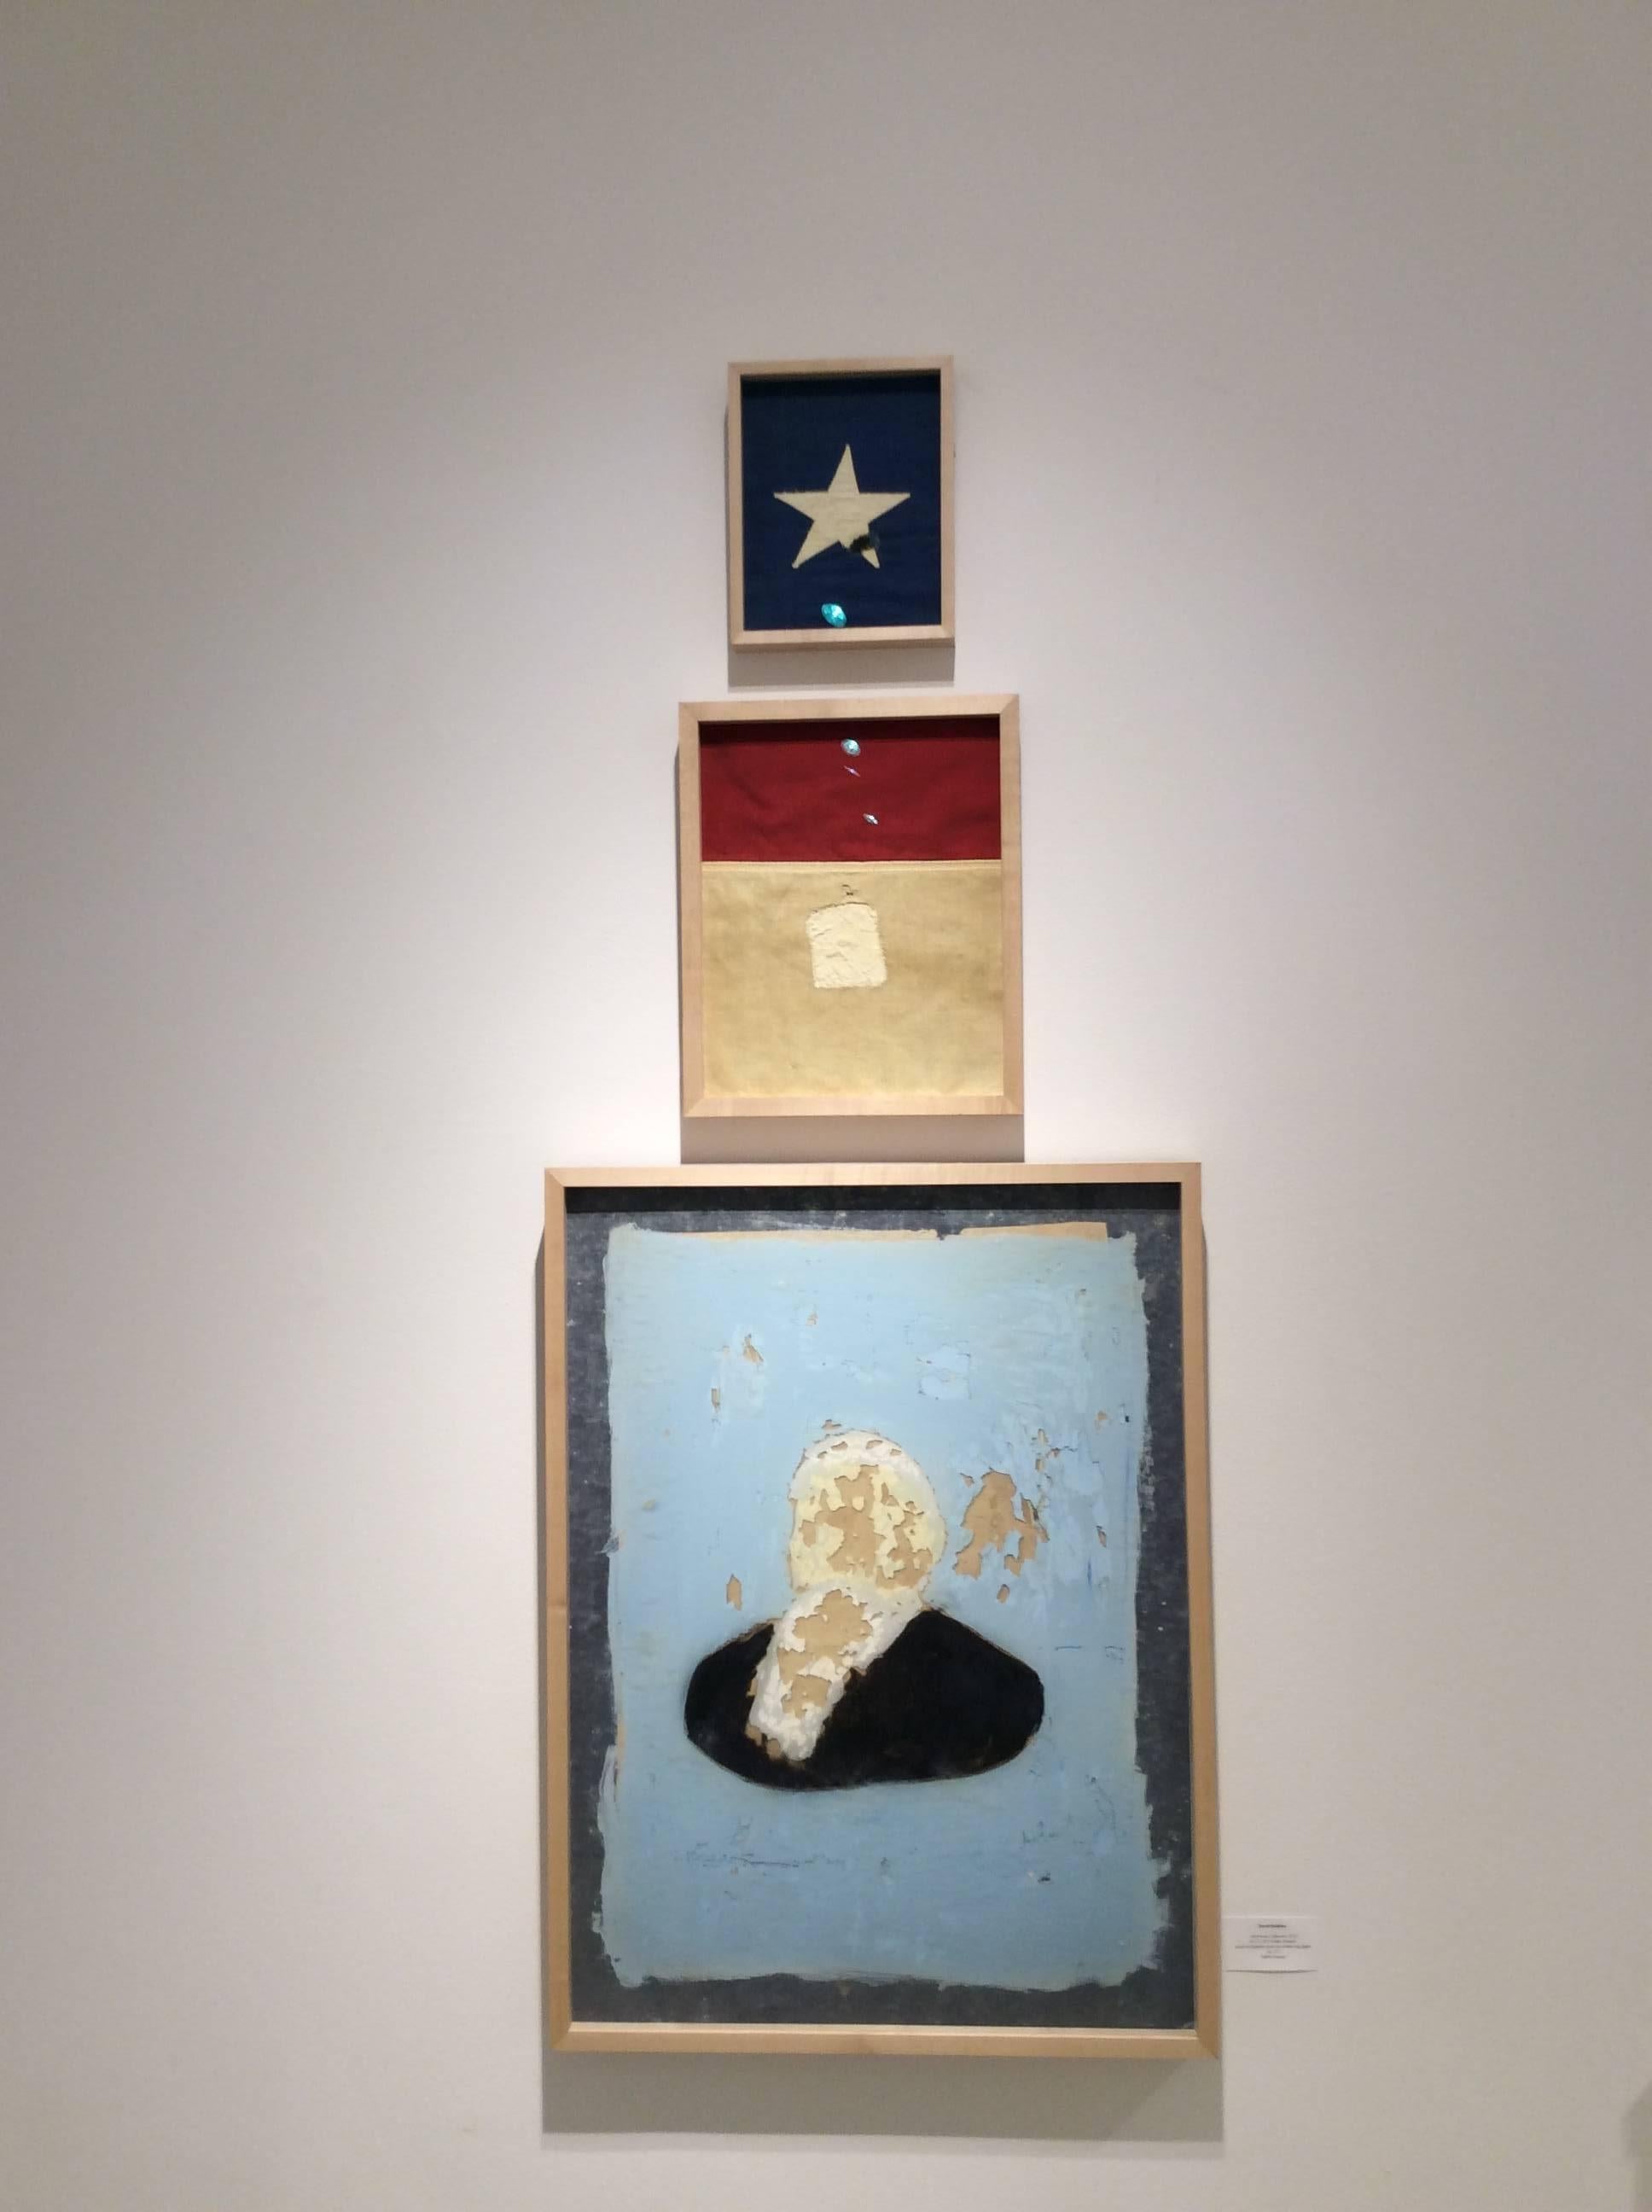 Amerikanisch, Unbekannt (Graphic, Vintage-Stil Rot, Weiß, Blau Patriotic Triptychon)  – Photograph von David Halliday